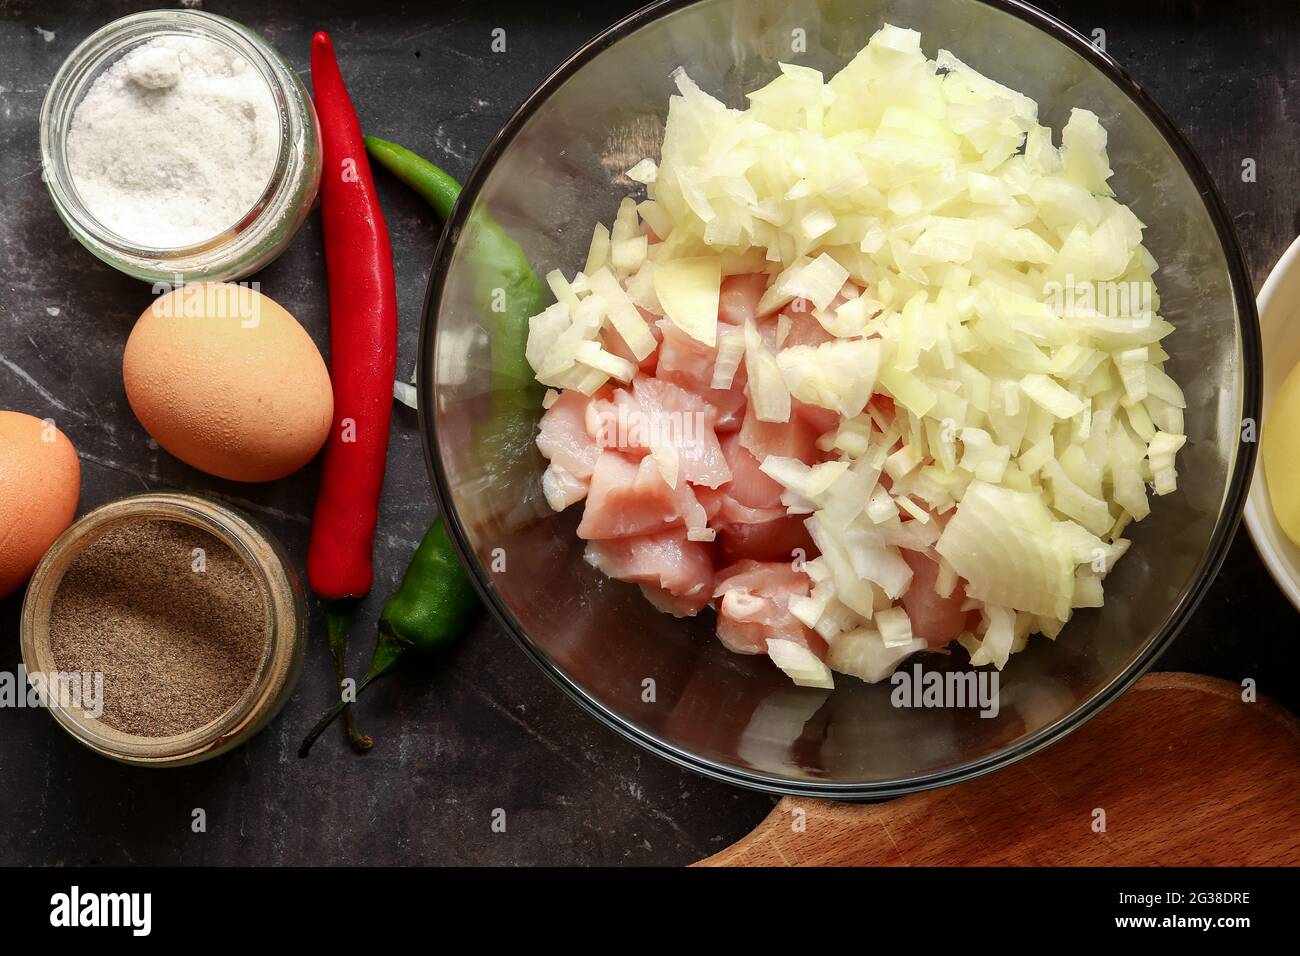 Préparation étape par étape de viande hachée pour boulettes de poulet. Vue de dessus. Processus de cuisson dans la cuisine. Recette. Viande et oignon. Banque D'Images